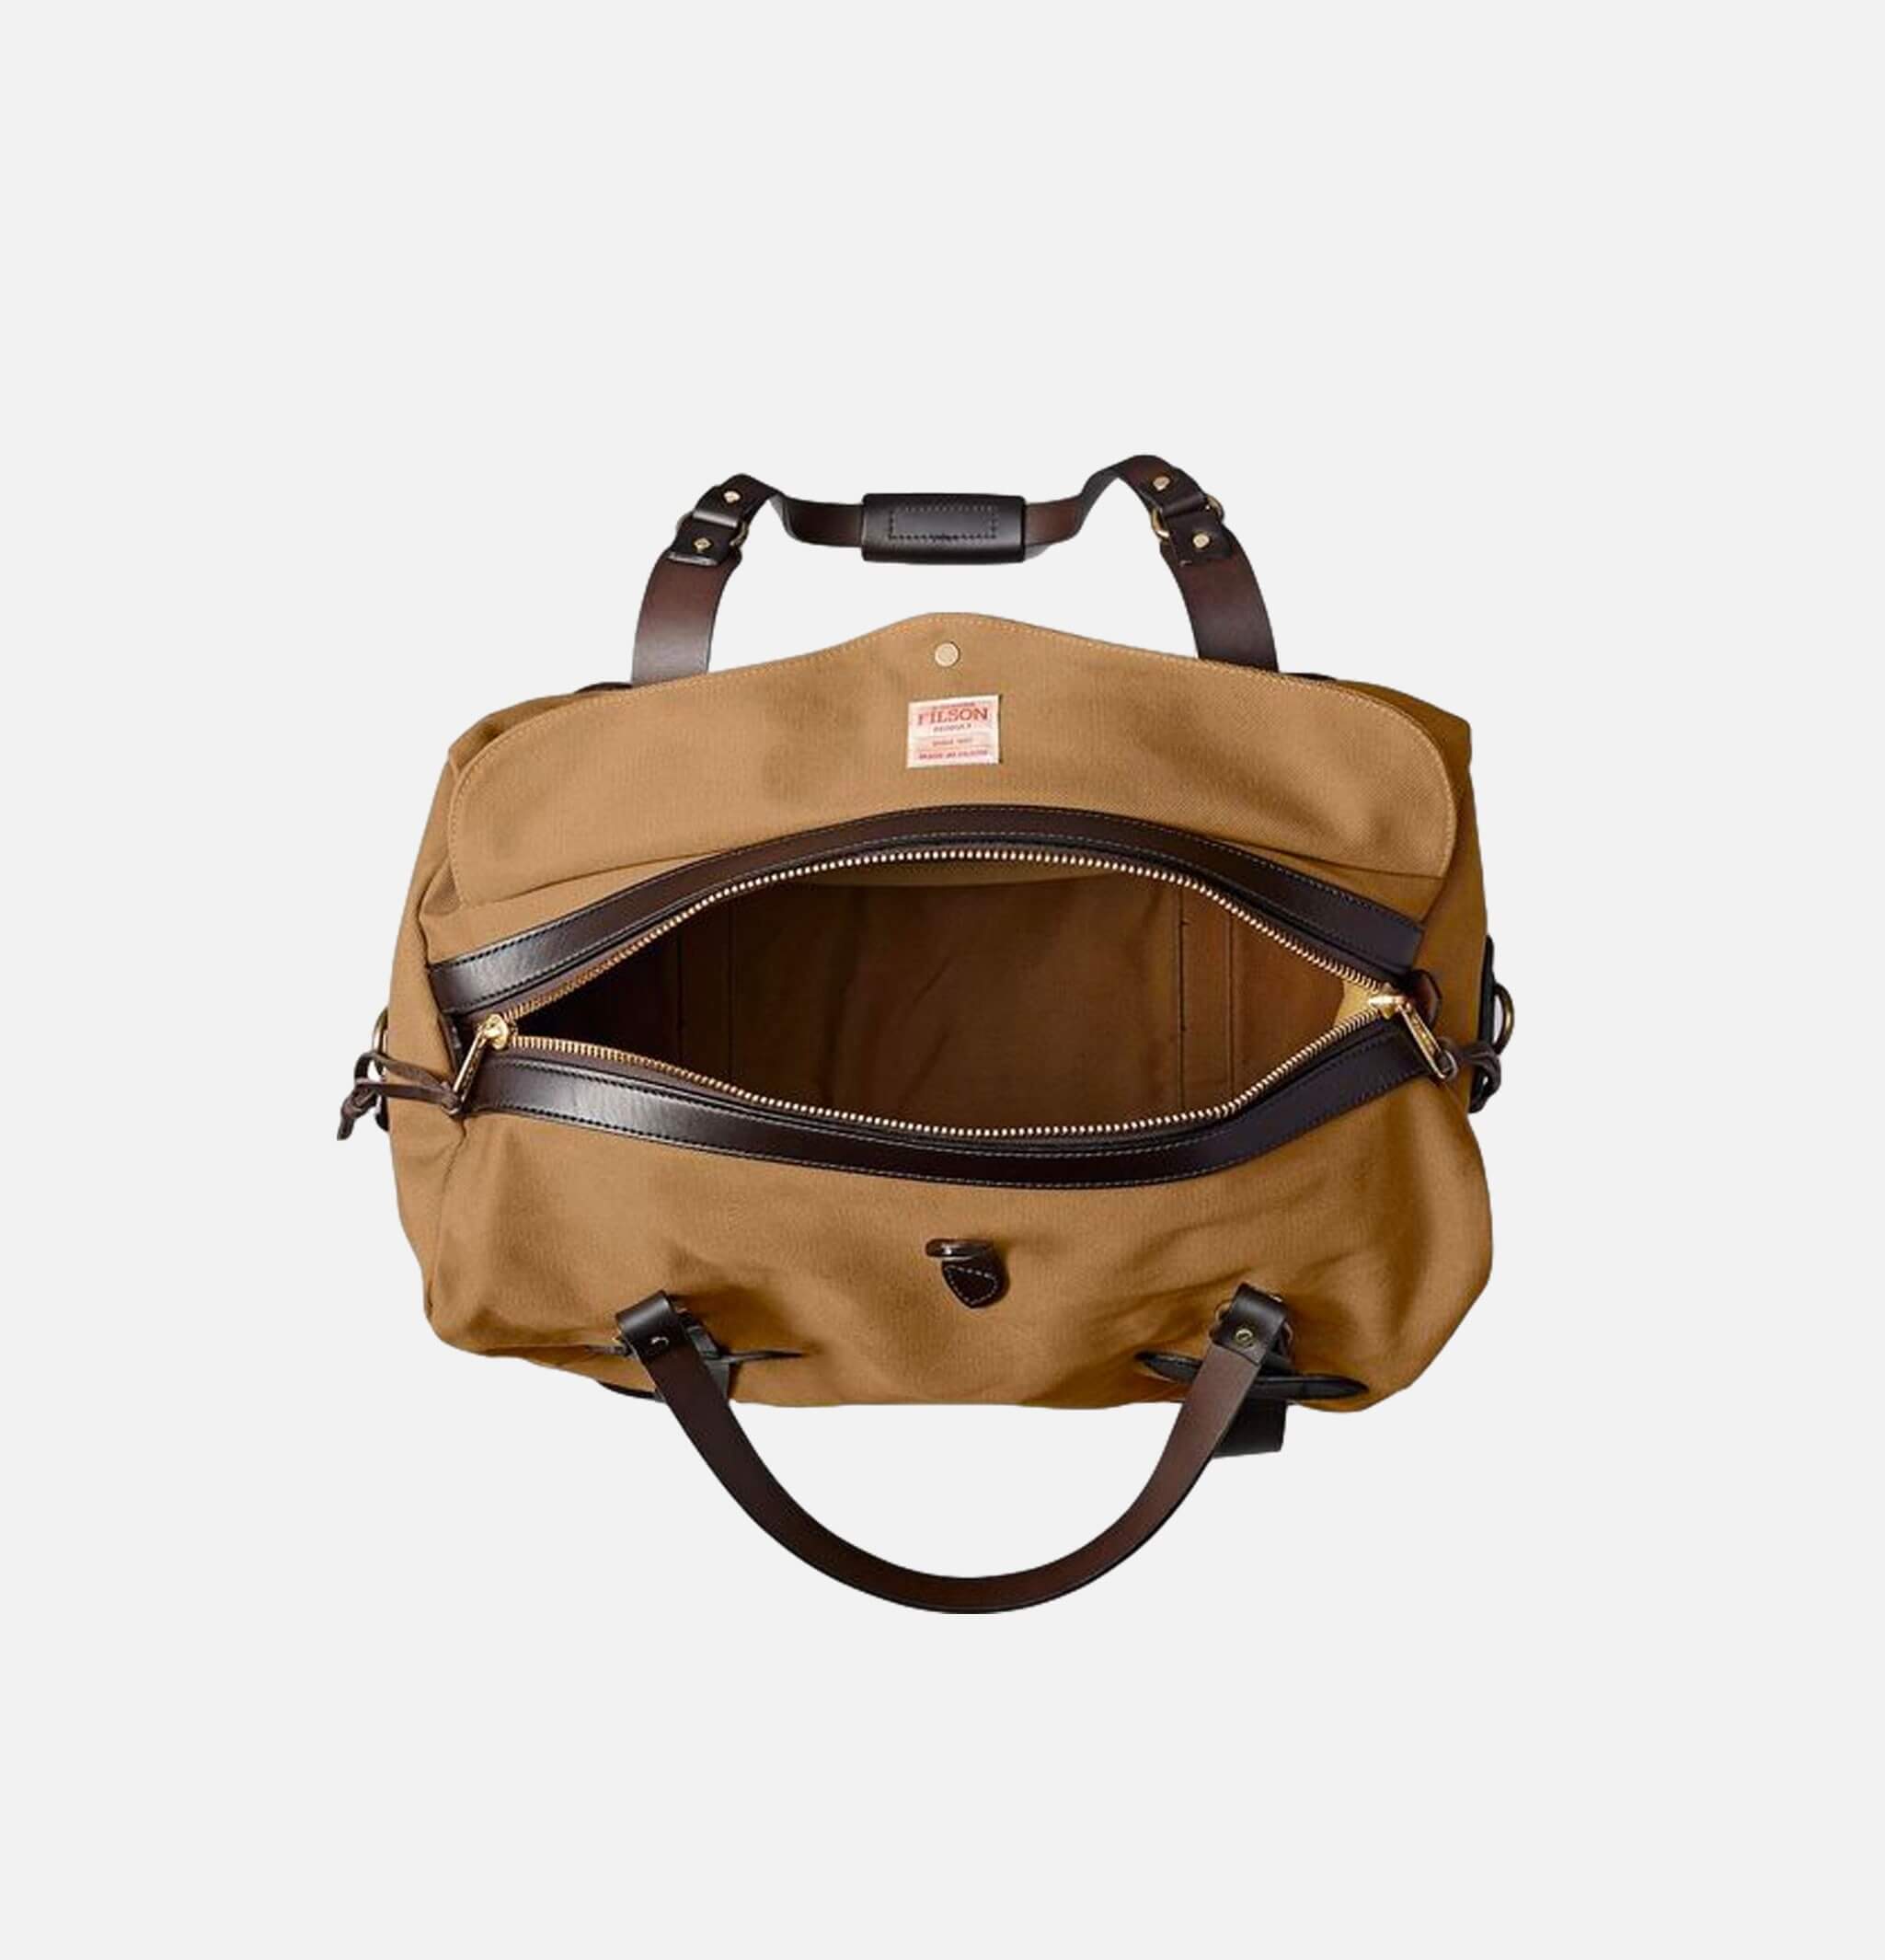 70325 - Medium Duffle Bag Tan